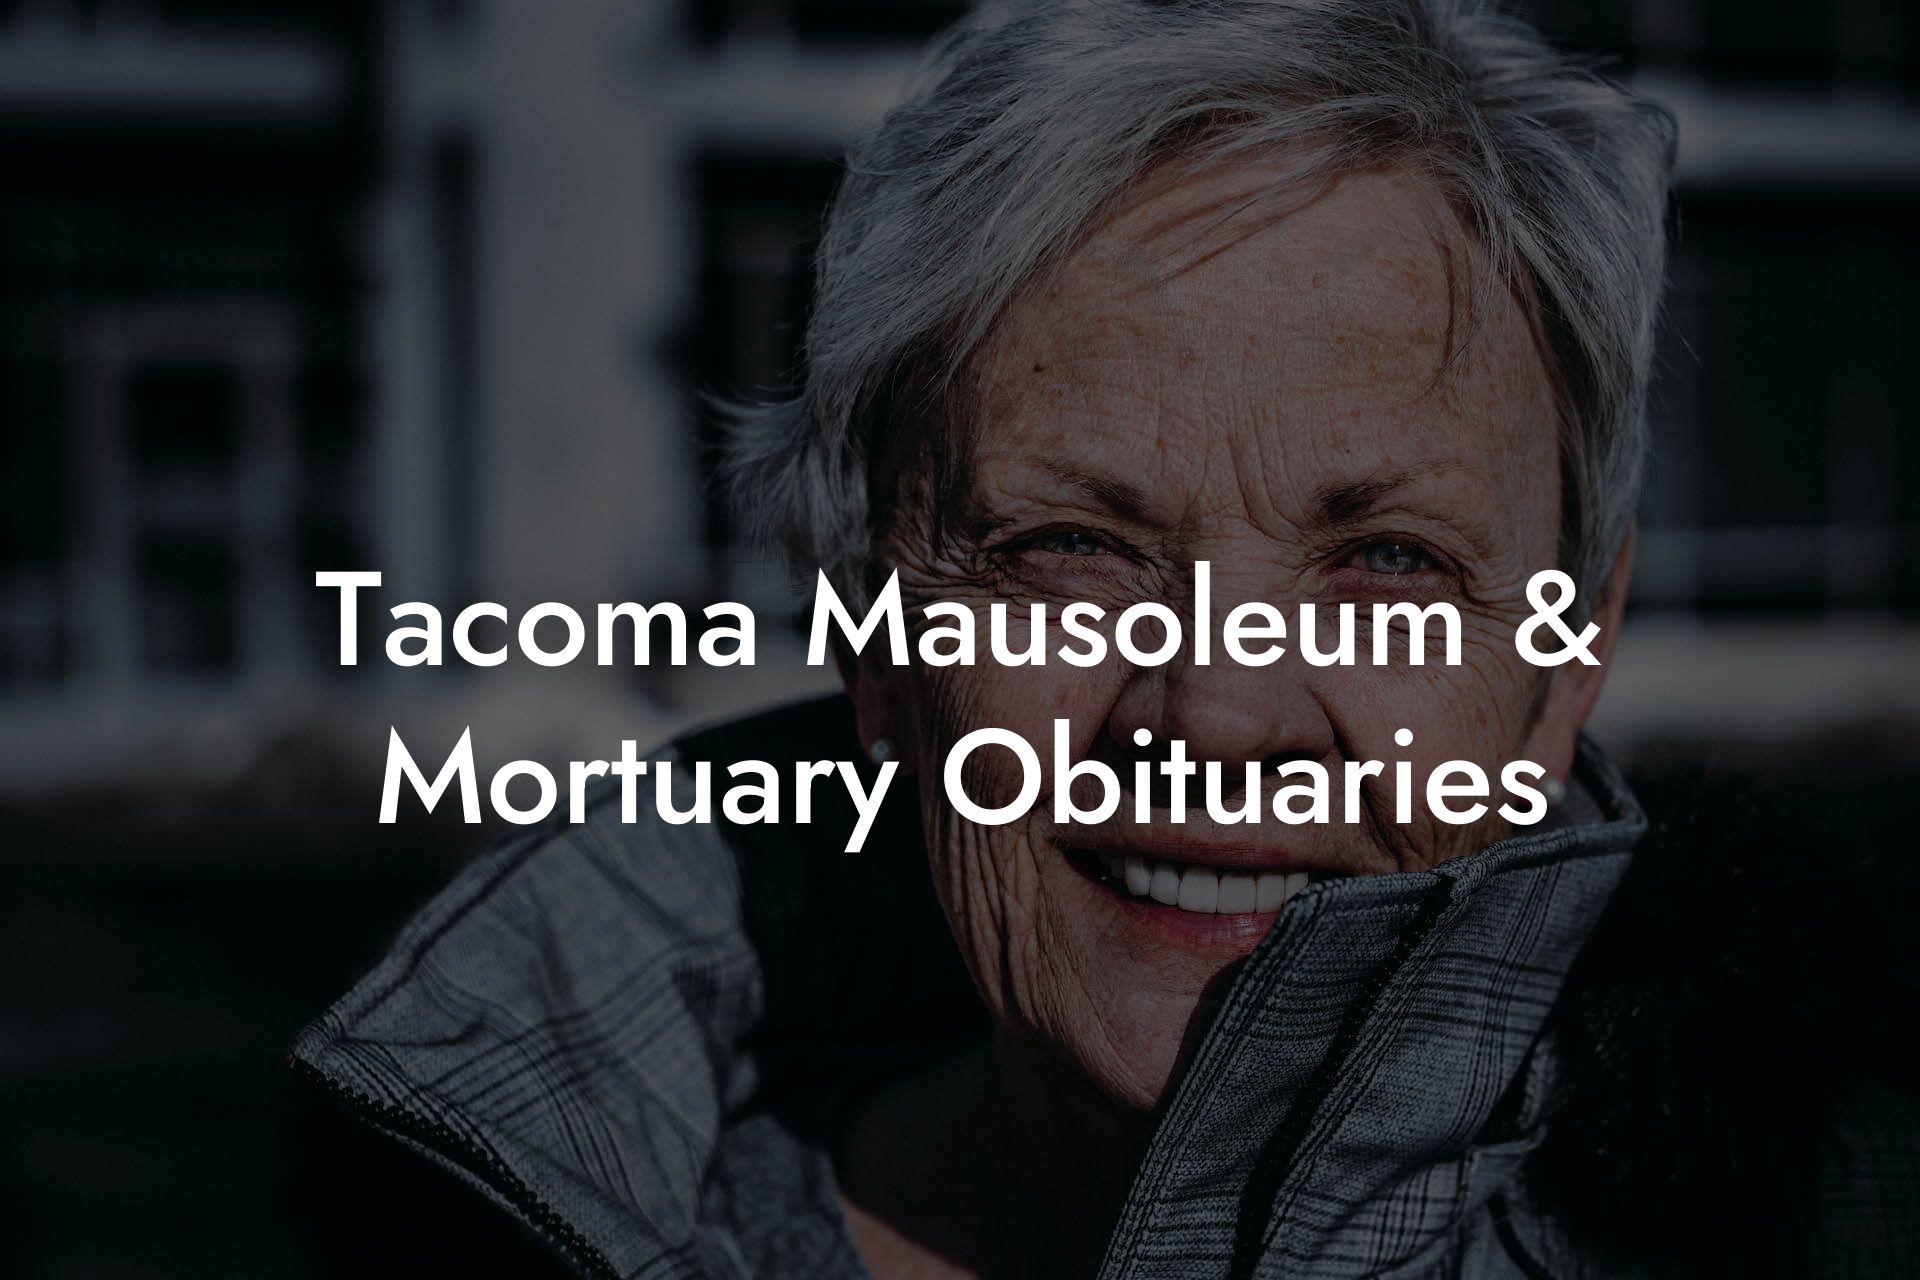 Tacoma Mausoleum & Mortuary Obituaries